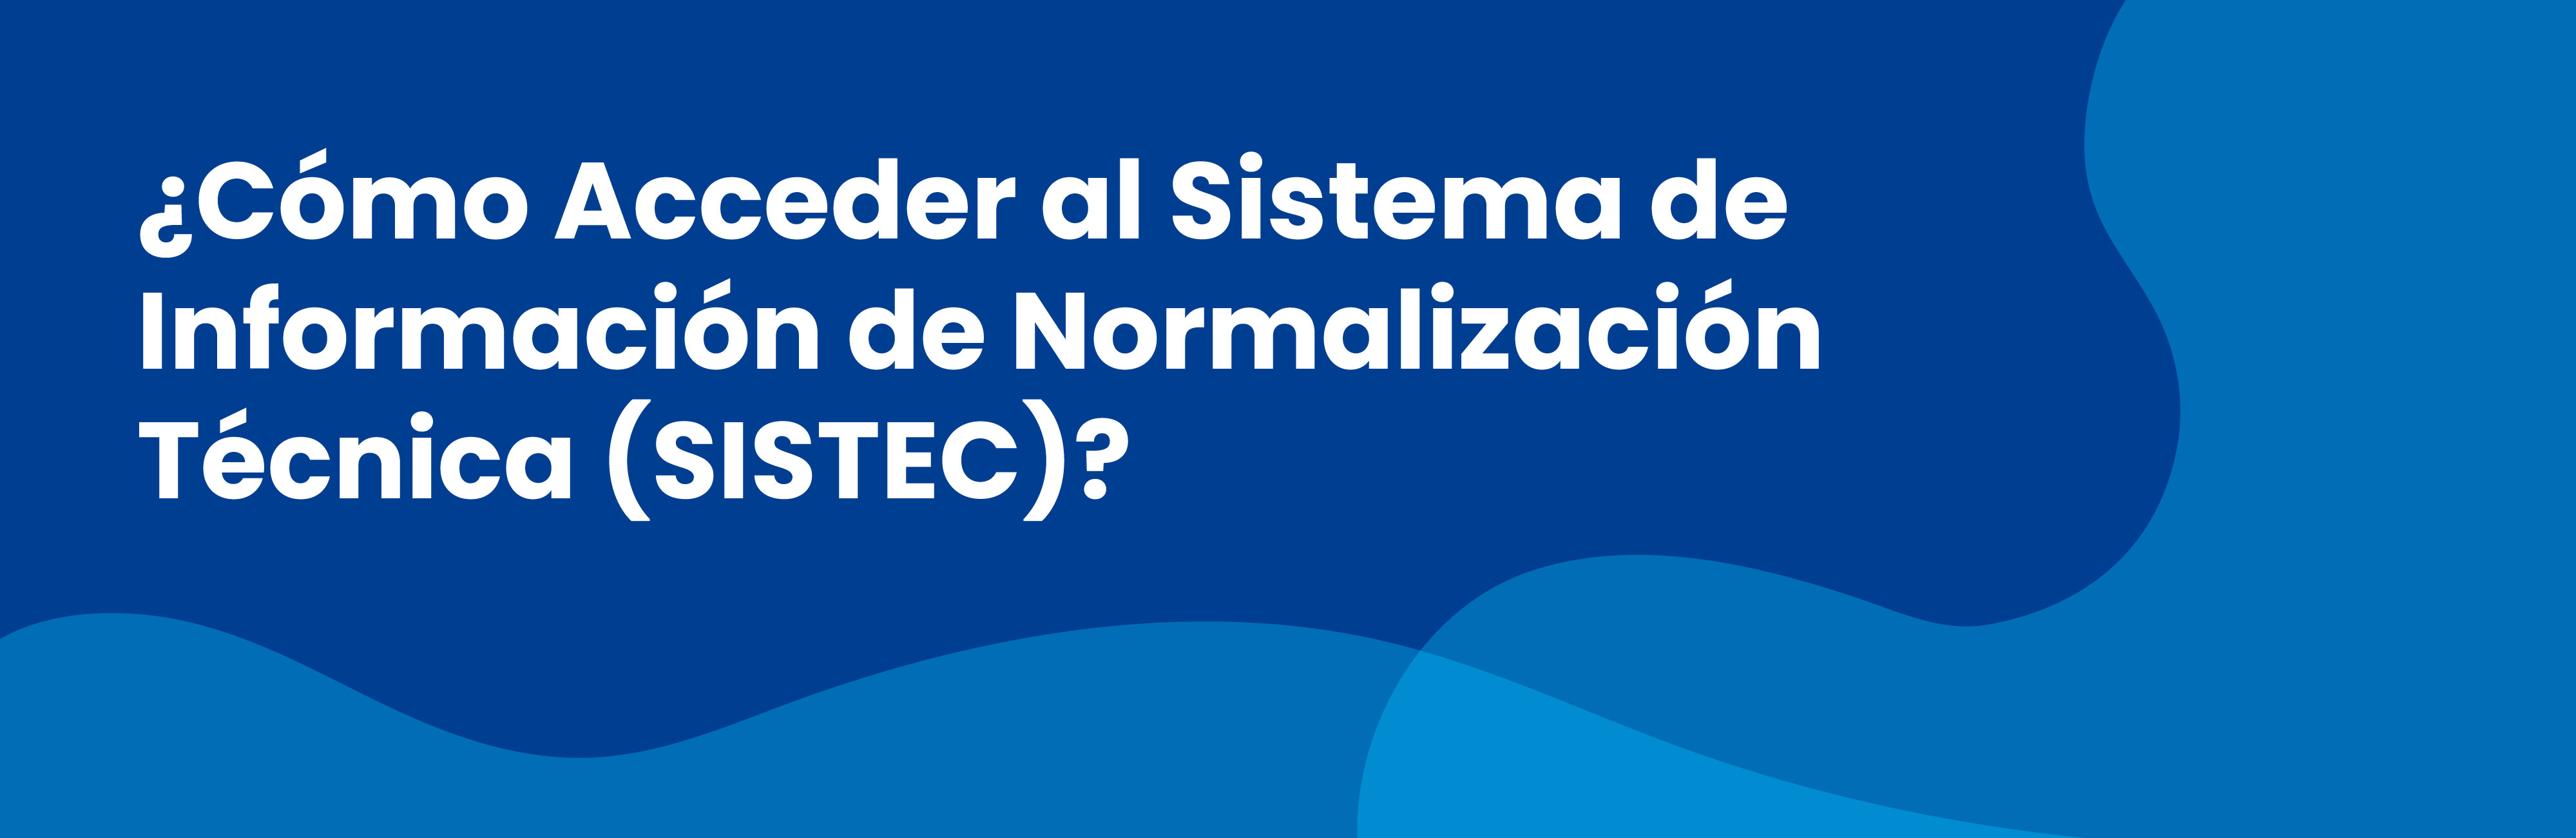 ¿Cómo Acceder al Sistema de Información de Normalización Técnica (SISTEC)?